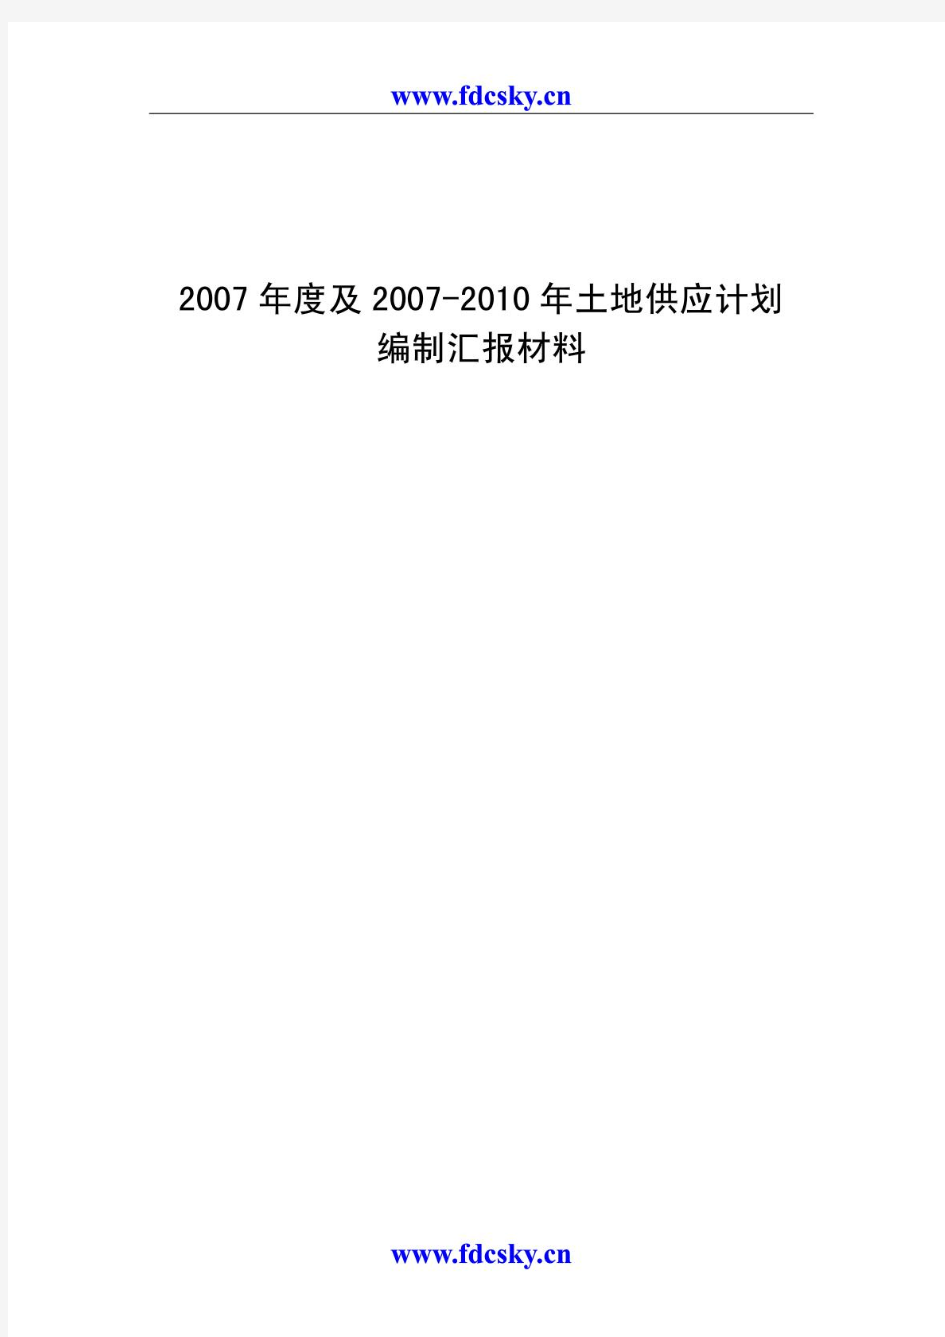 2007年度及2007-2010年北京土地供应计划